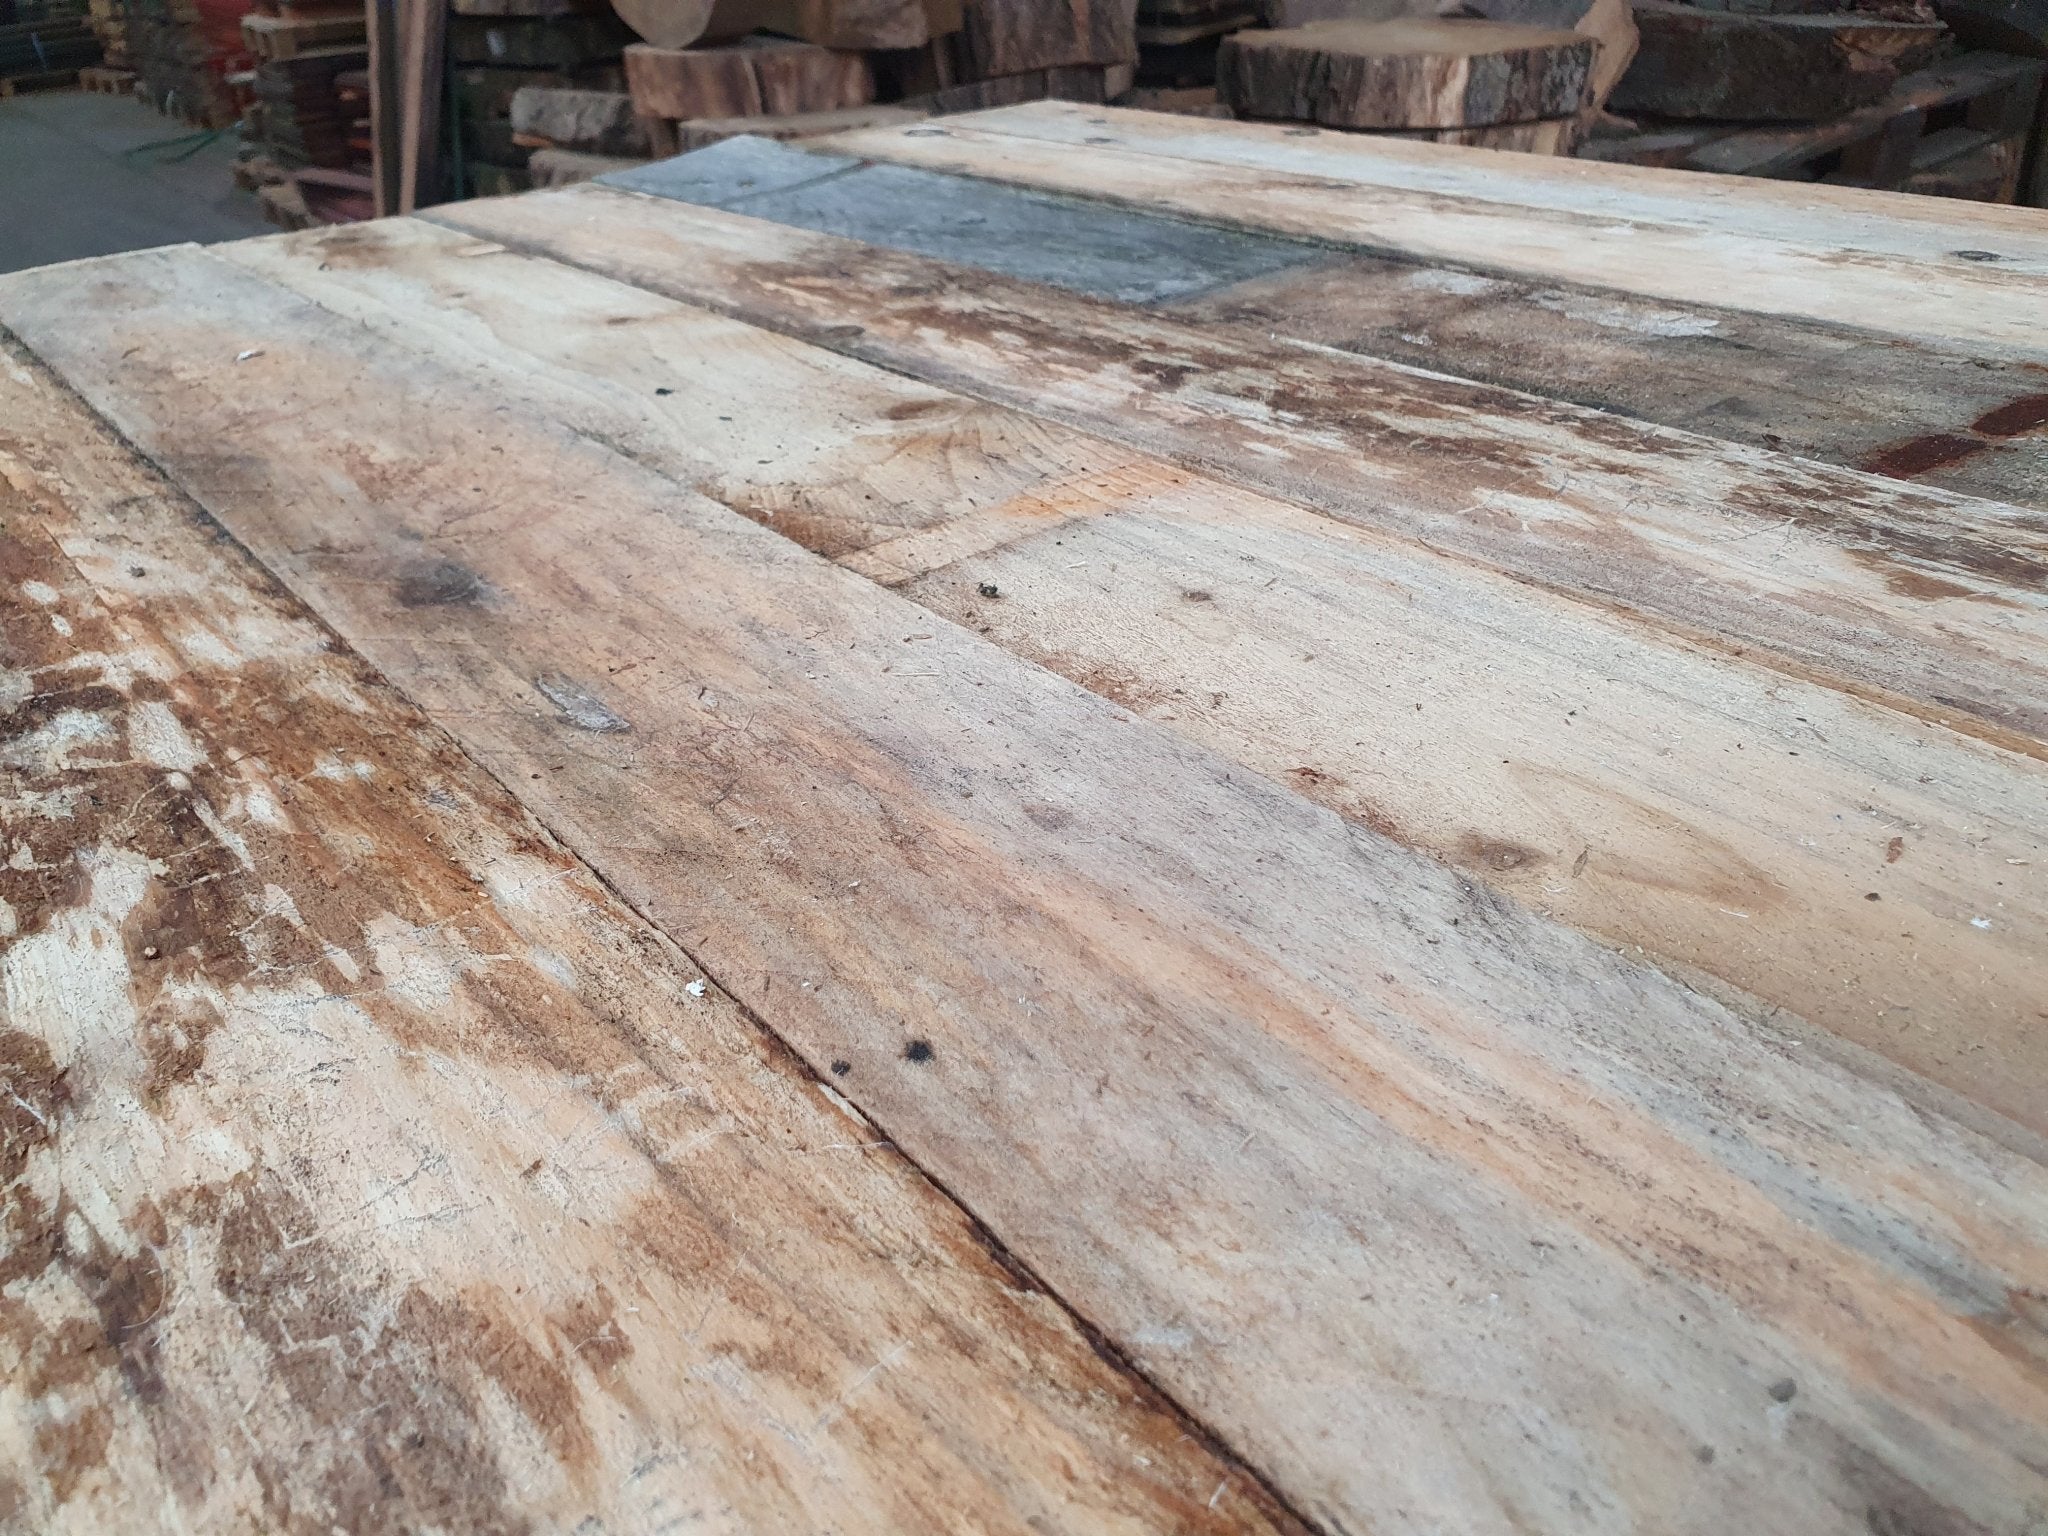 Nieuwsgierig naar de Vintage Factory Mix? Ontdek de naaldhouten planken met een rijke geschiedenis in ons proefpakket.